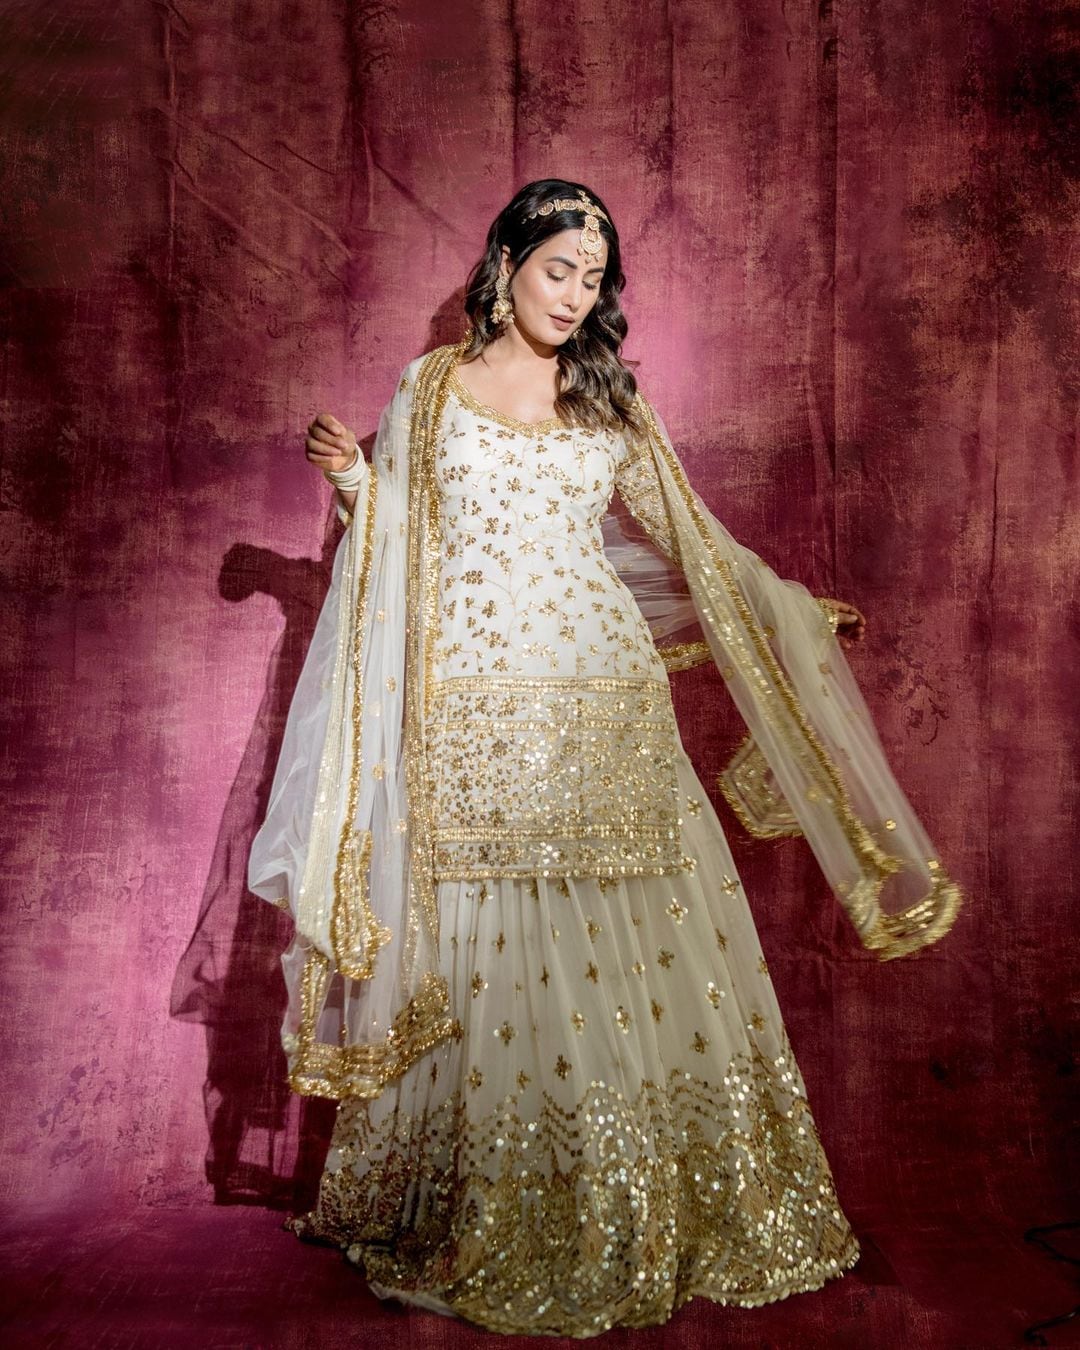 Hina Khan gives royal princess vibes in the white and golden kurta and lehenga